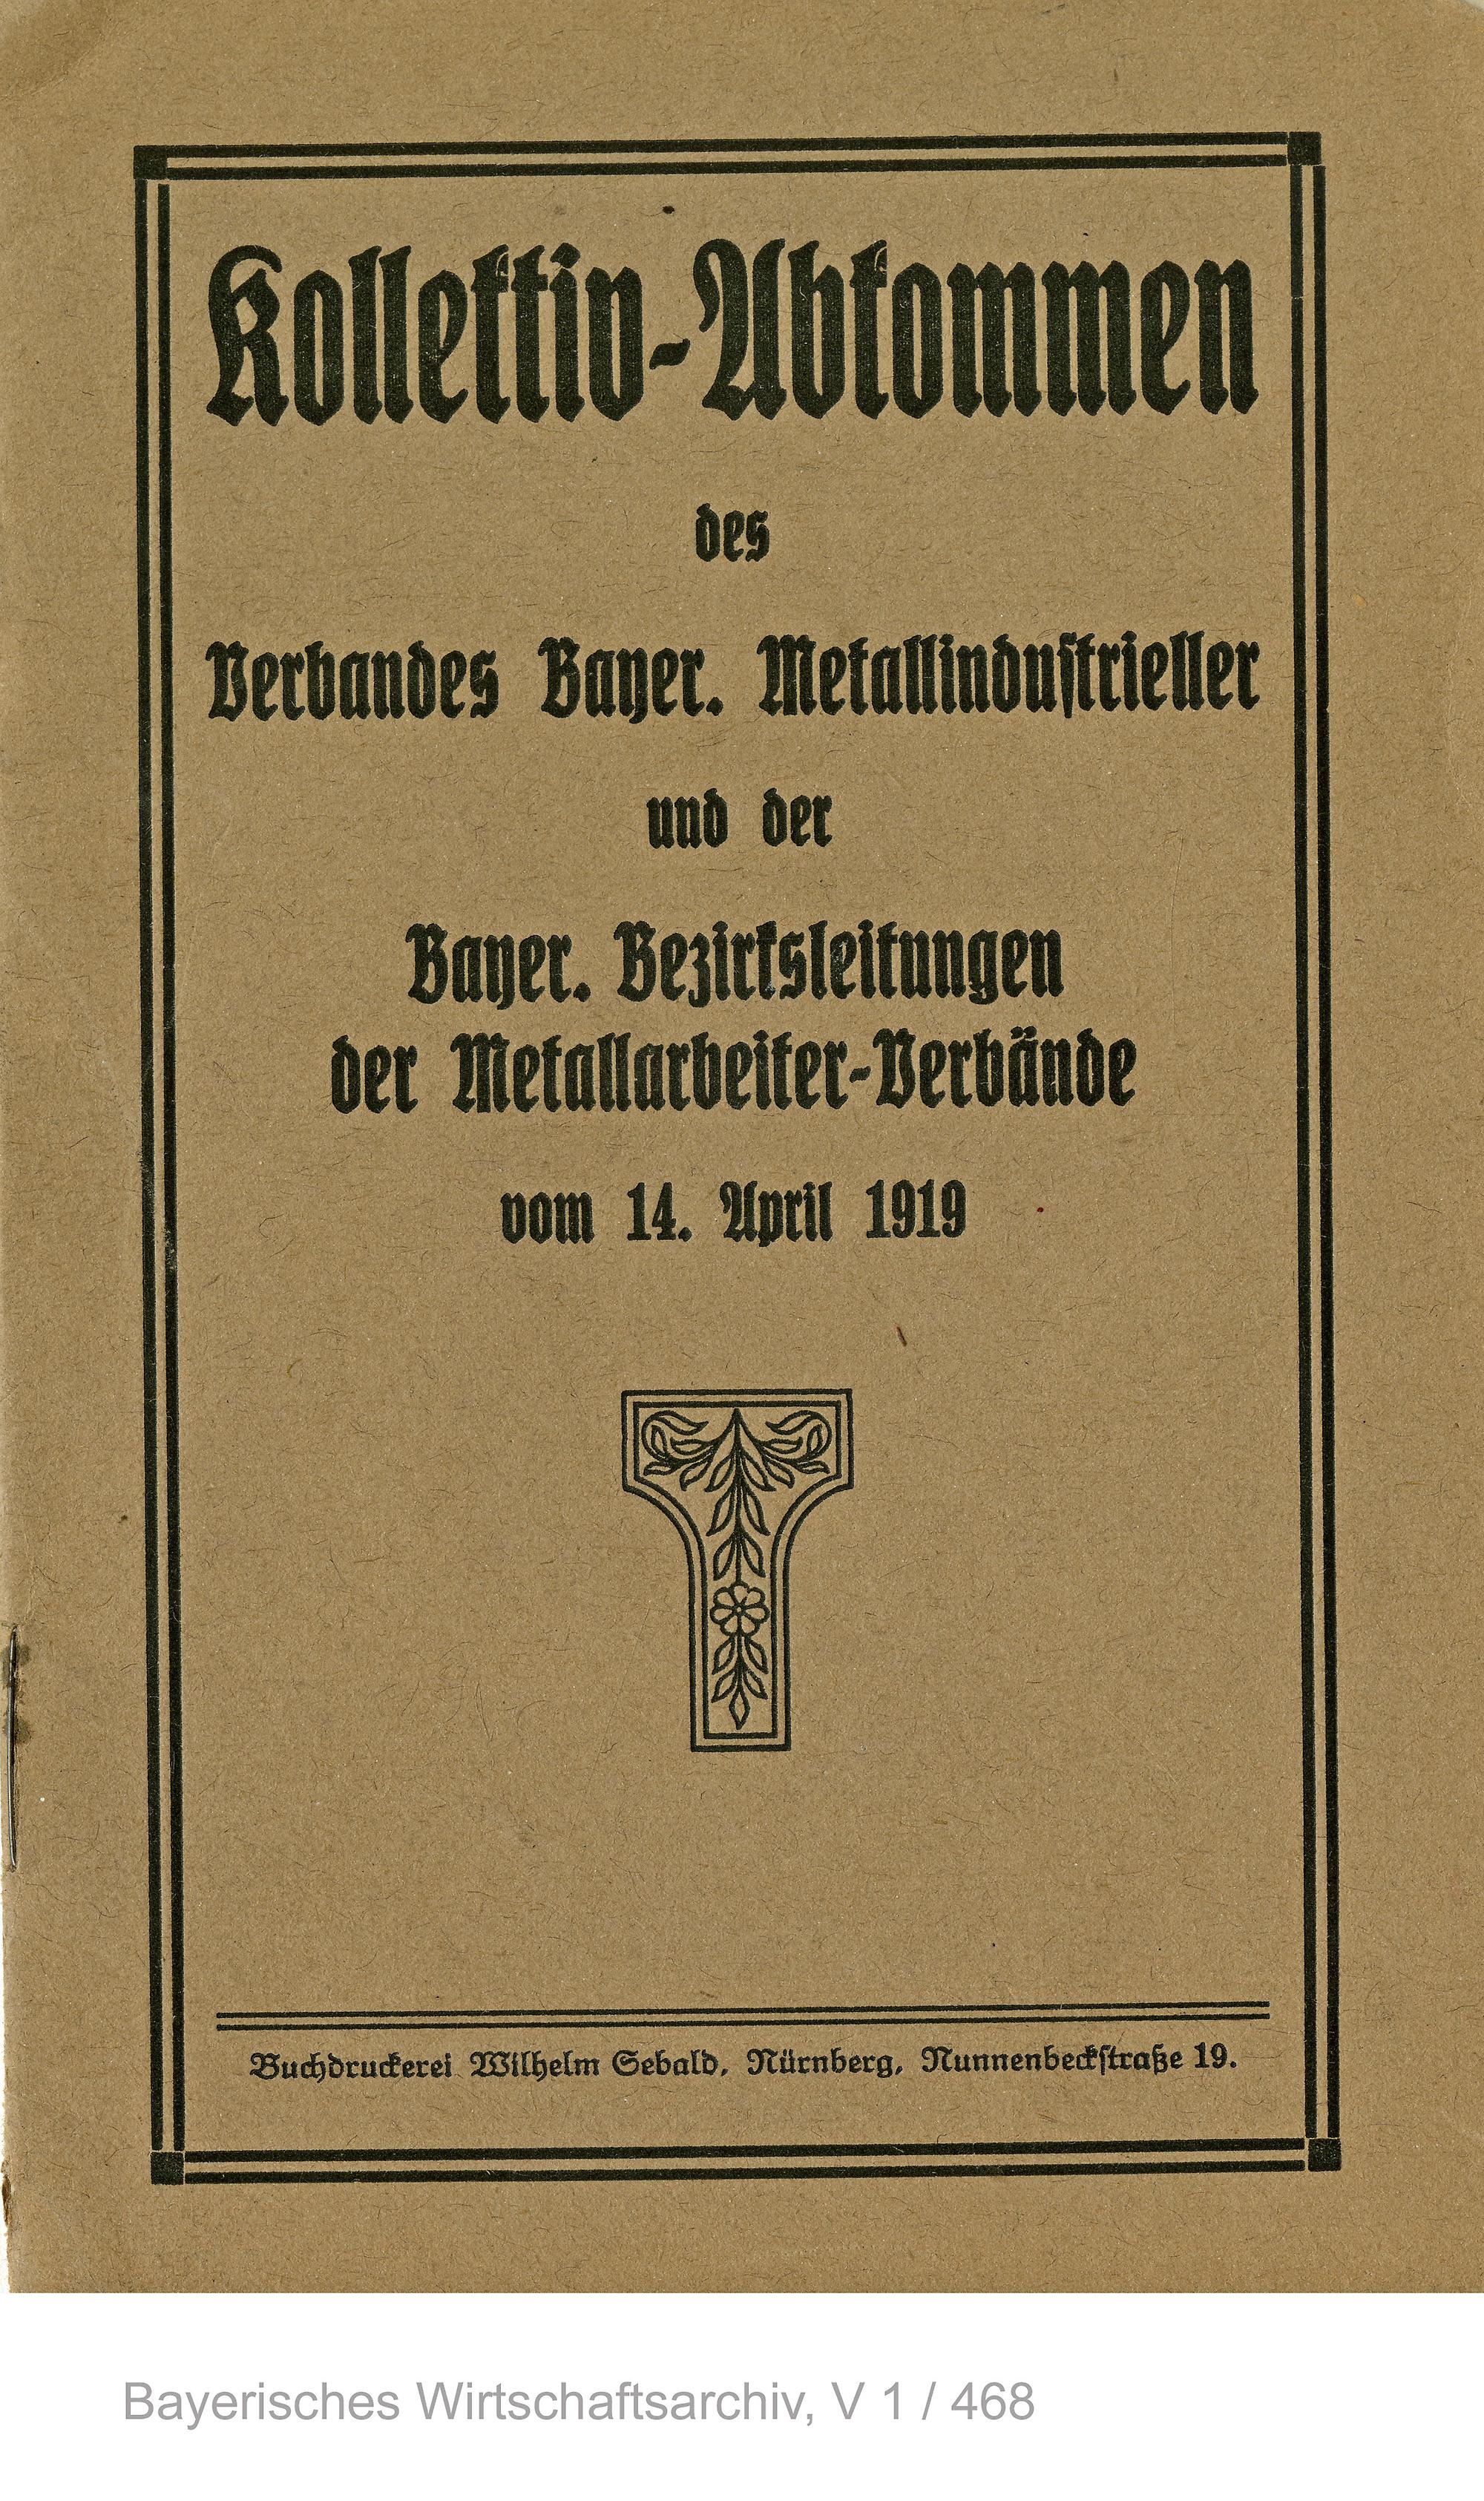 Der erste Tarifvertrag in der bayerischen Metallindustrie vom 14. April 1919 mit Bestimmungen zum Urlaub